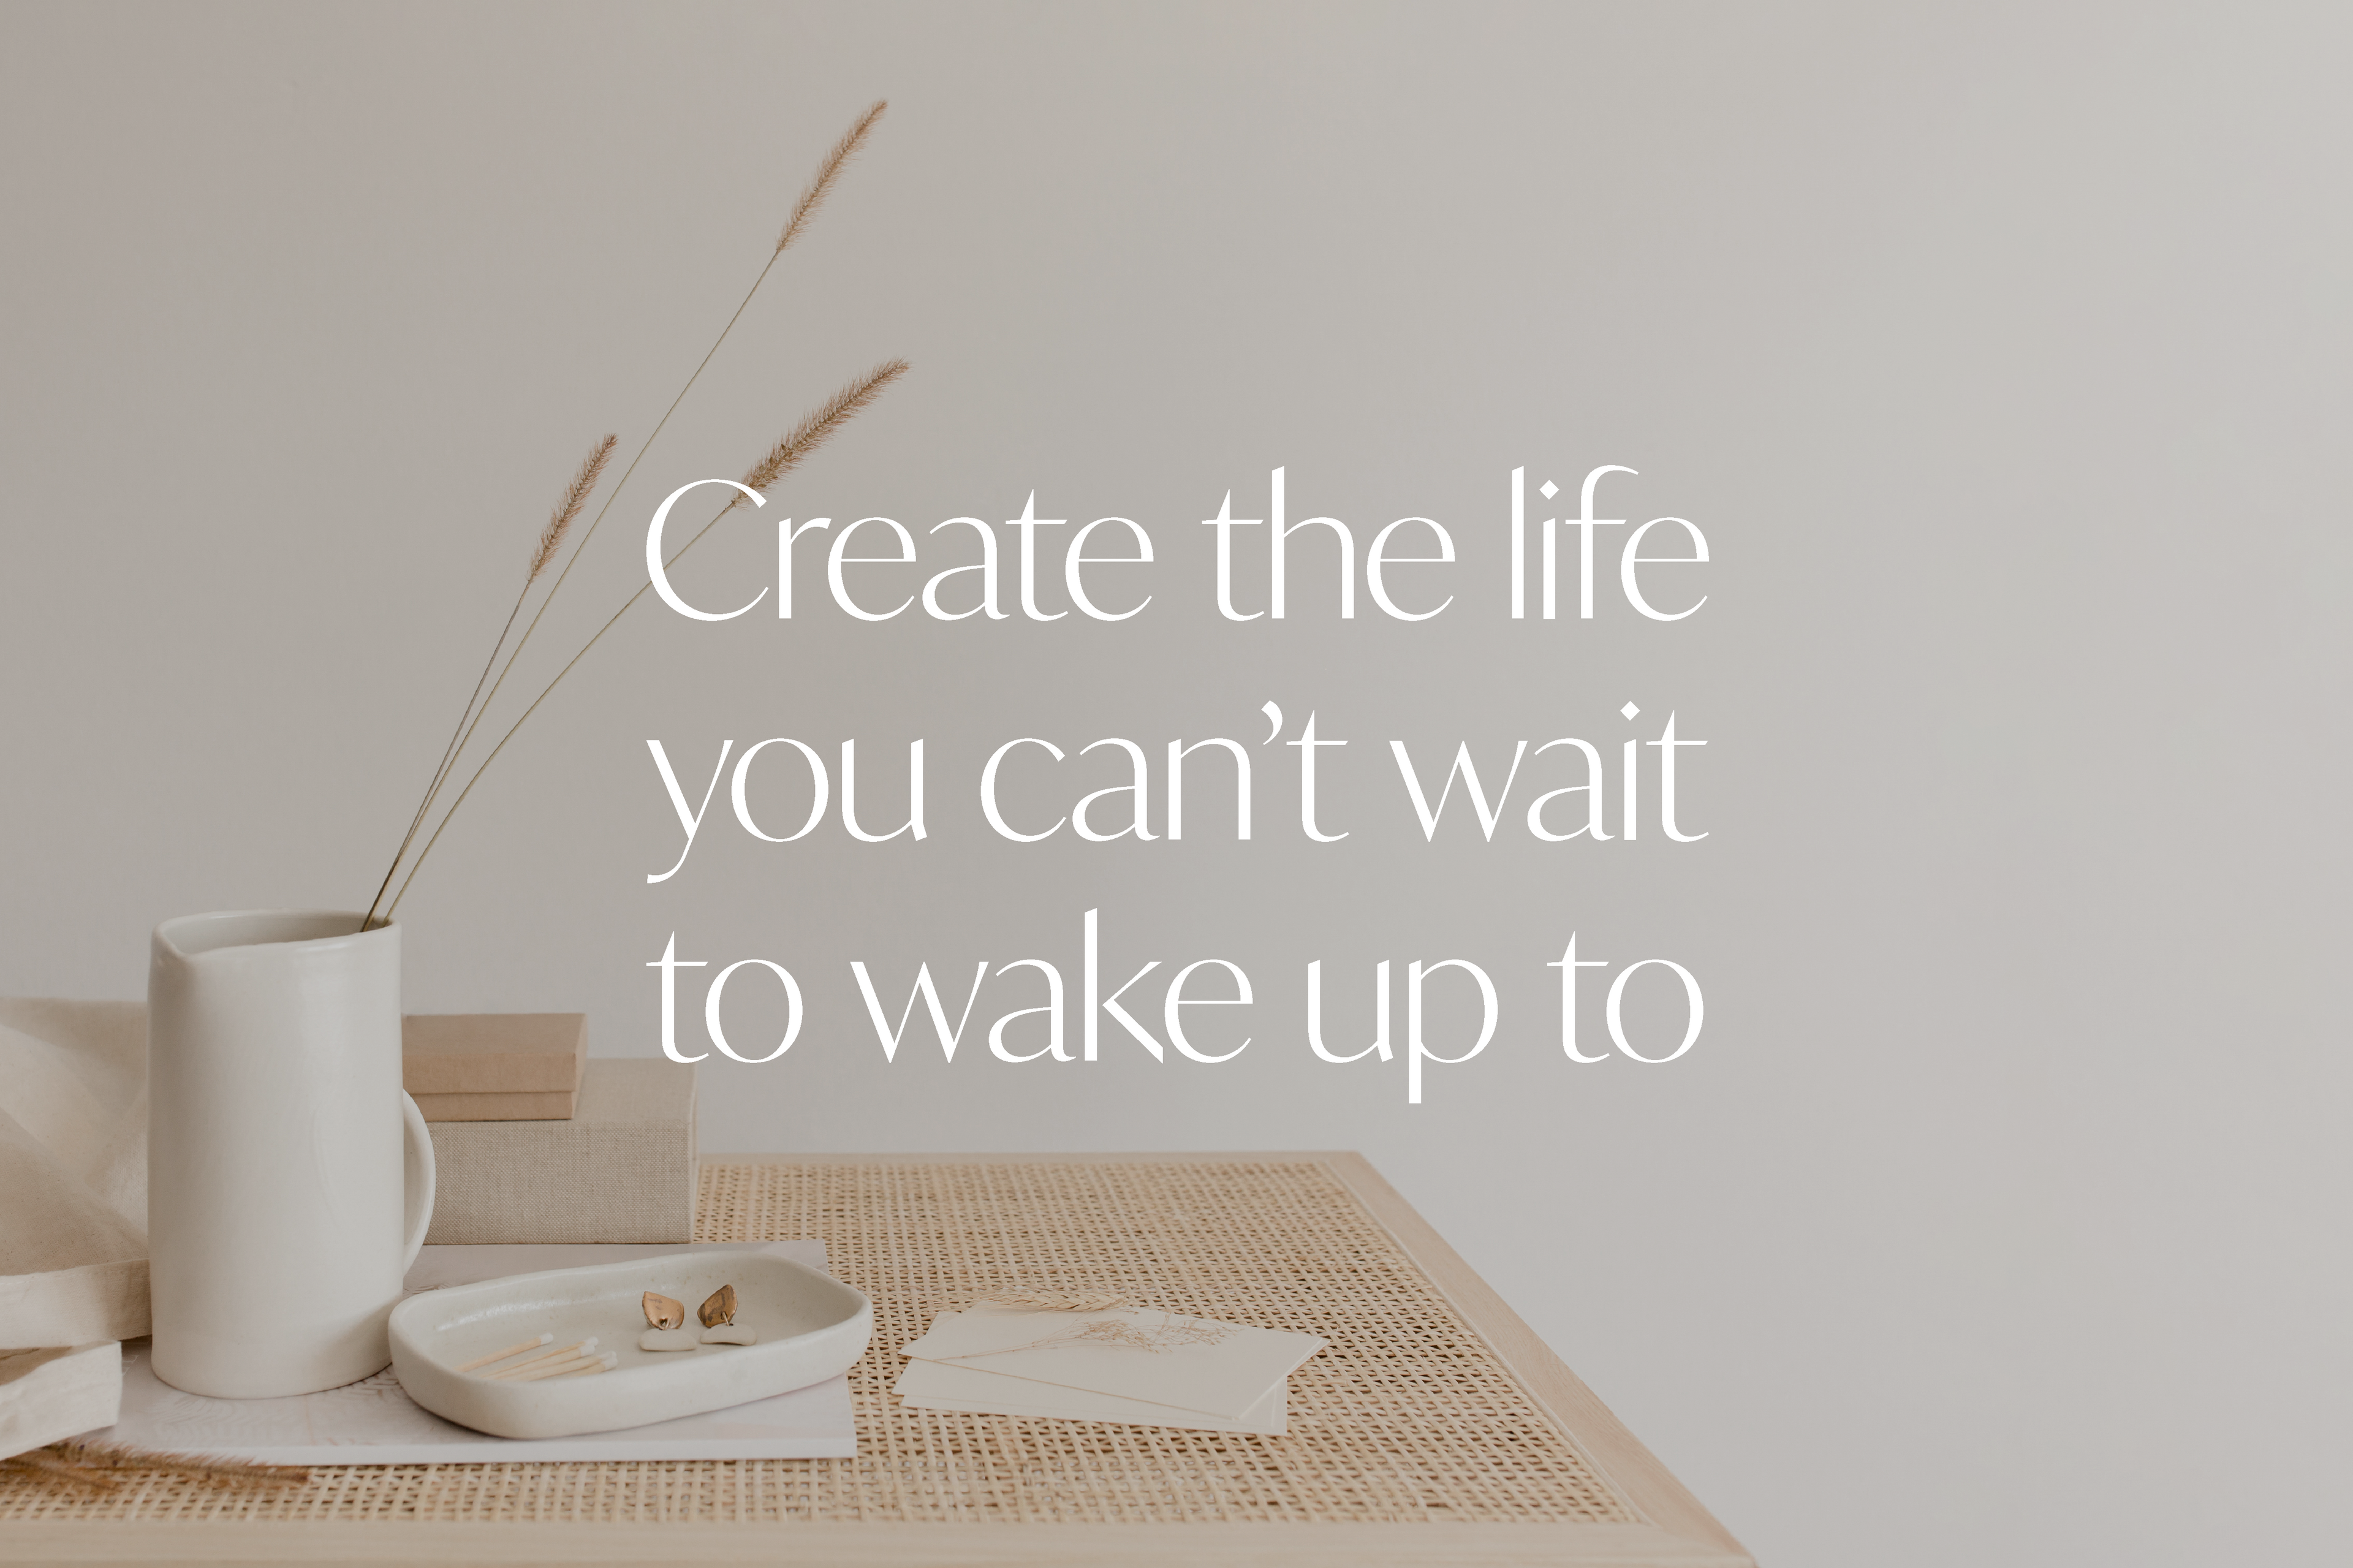 Text "Create the life you can't wait to wake up to" auf verdunkeltem Foto verschiedener Gegenstände in Creme- und Beige-Farben.